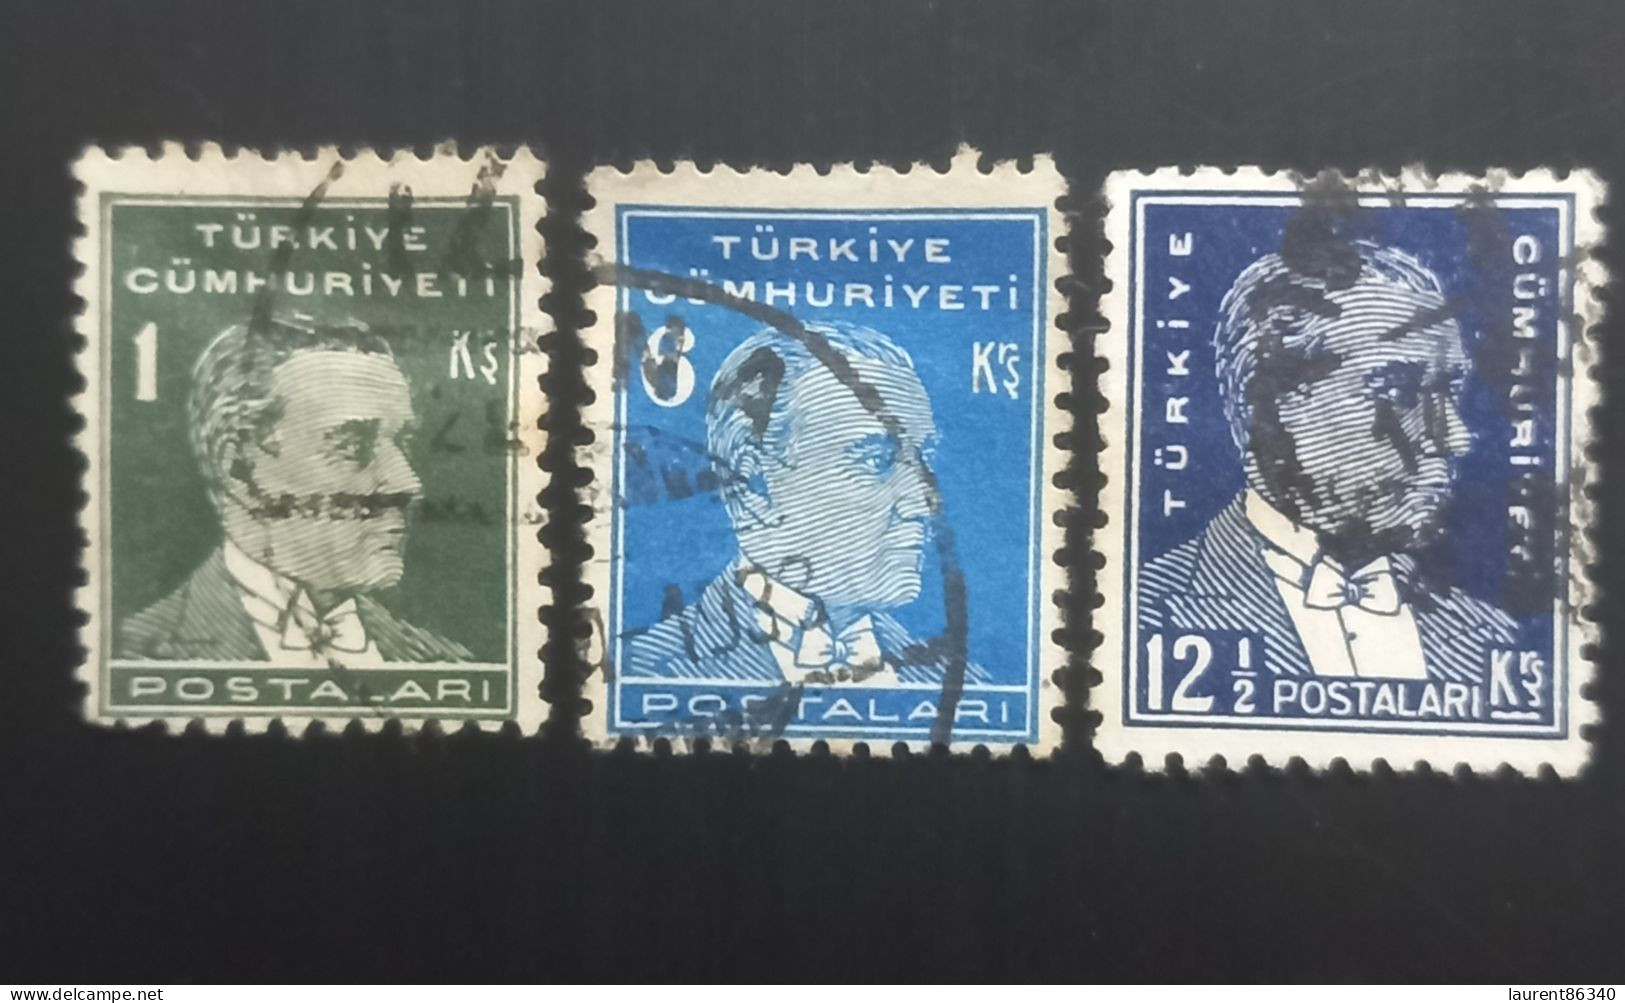 TURQUIE 1931 Ataturk – 3 Used Stamps - Usati